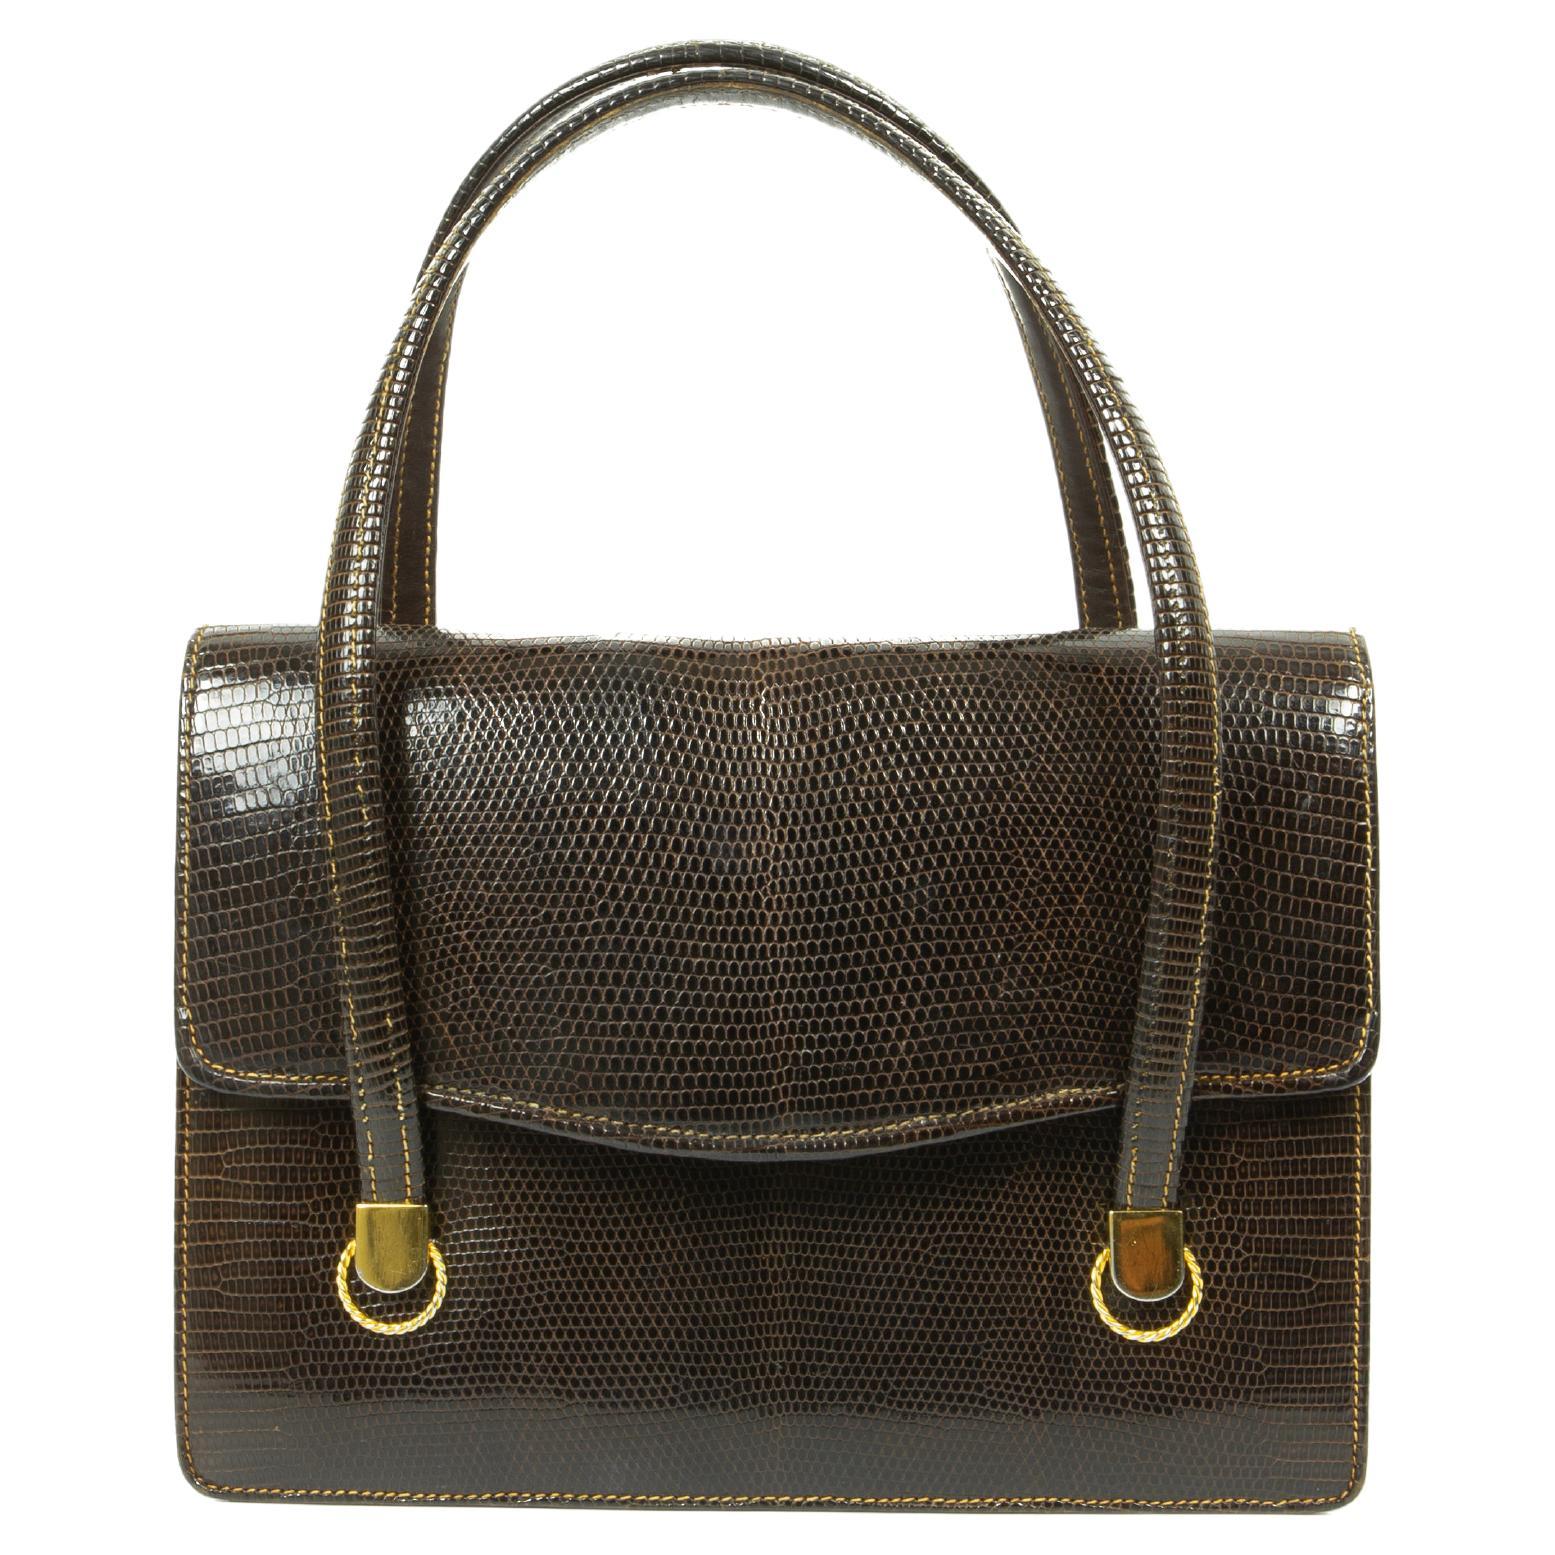 Vintage shoulder bag, pouch bag, brown leather, handbag, Louise Fontaine, designer bag, Belgium designer